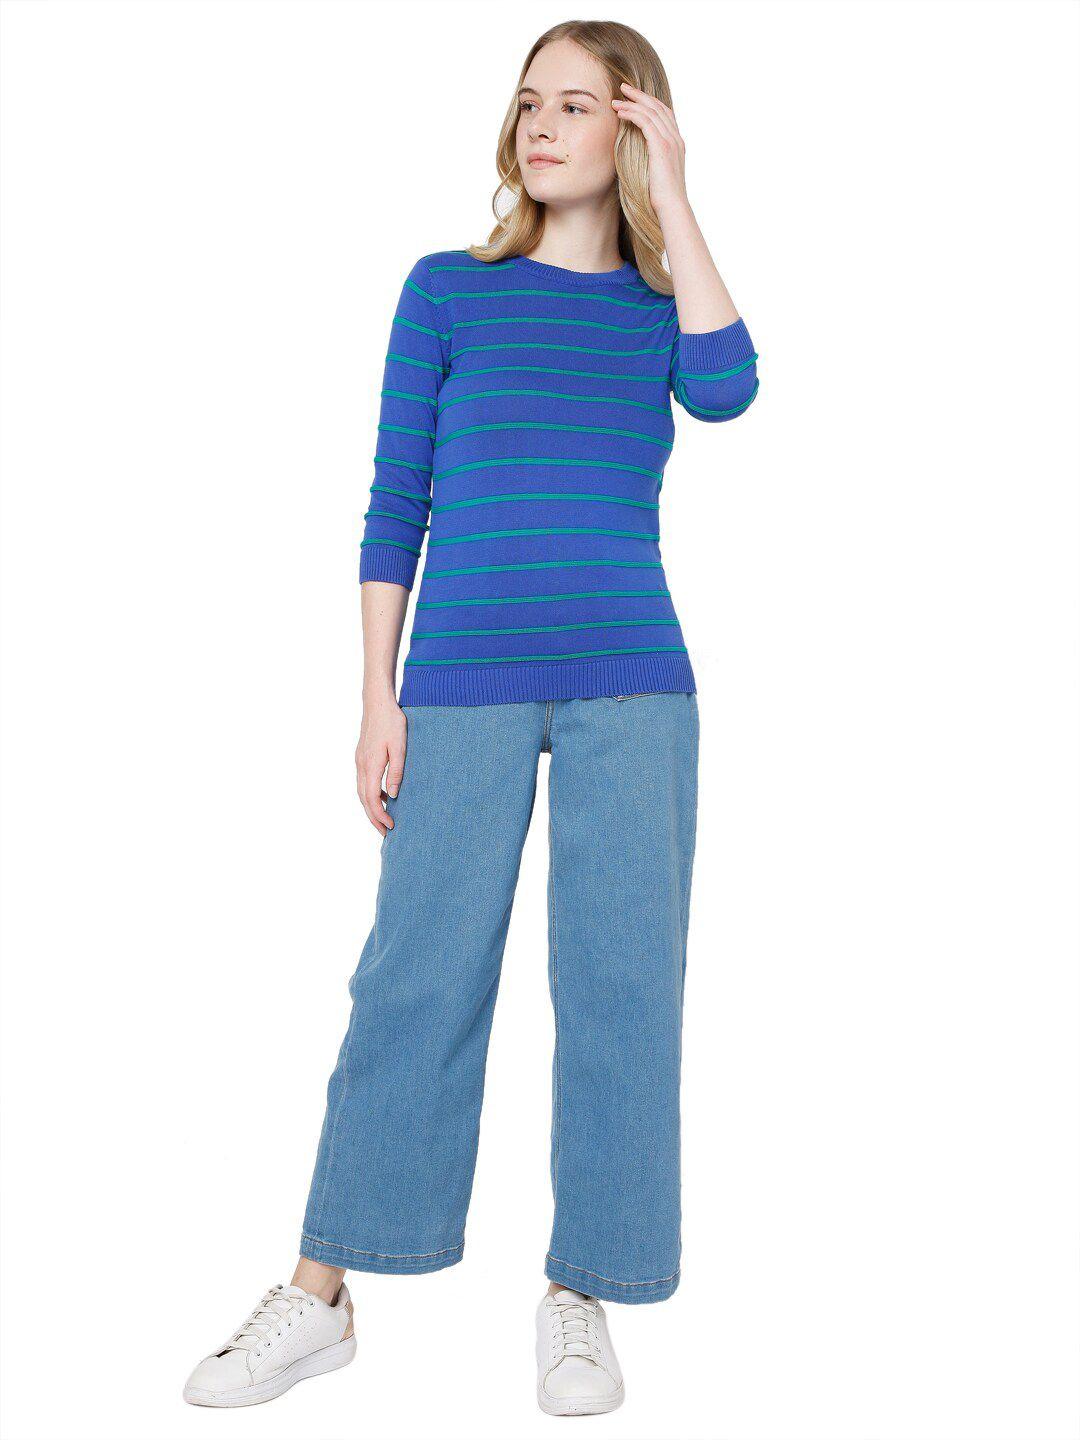 vero moda women blue & green striped pullover